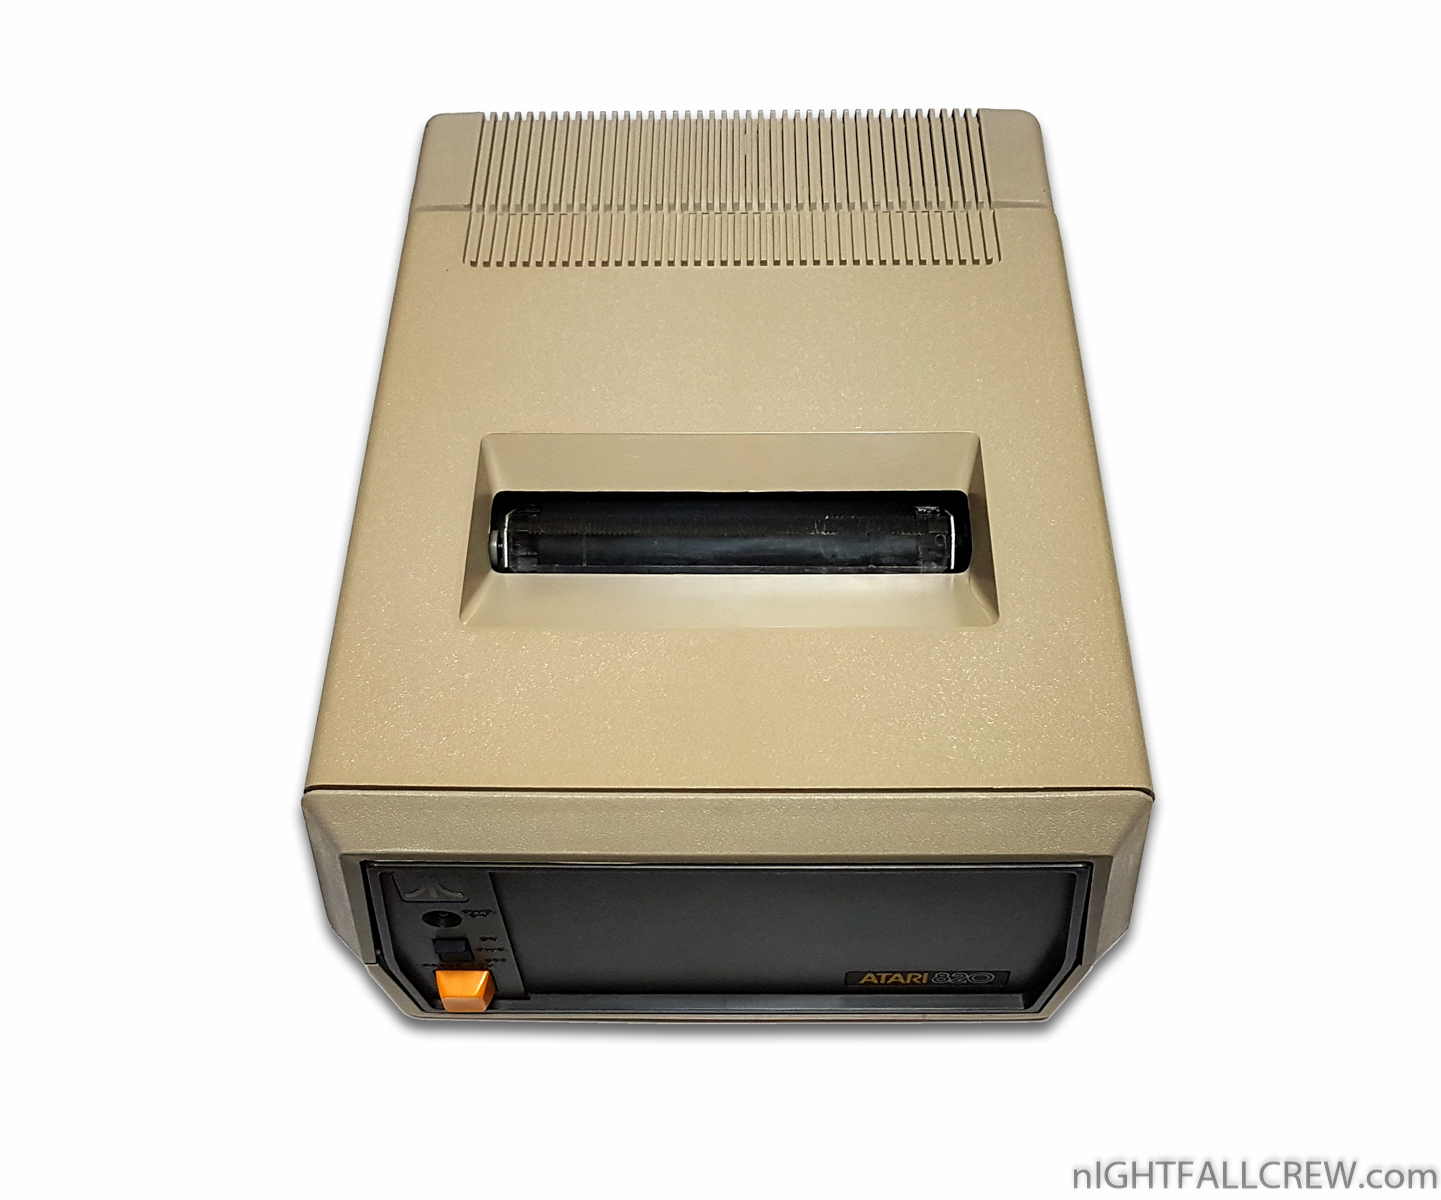 Atari 820